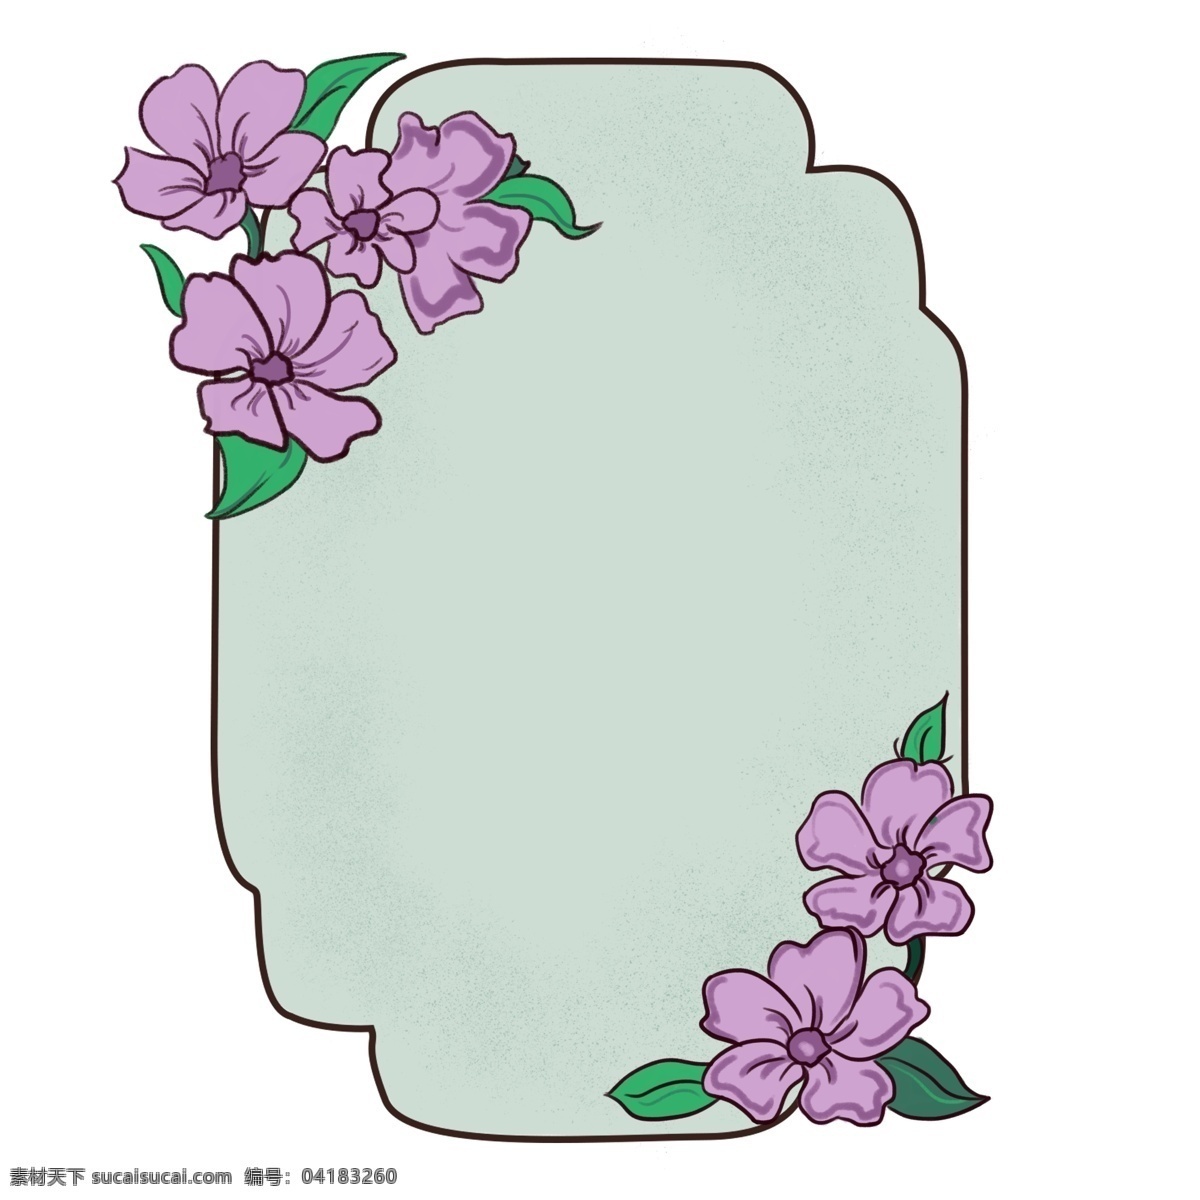 镜子 边框 卡通 插画 紫色的花朵 卡通插画 边框插画 框框 框架 简易边框 镜子的边框